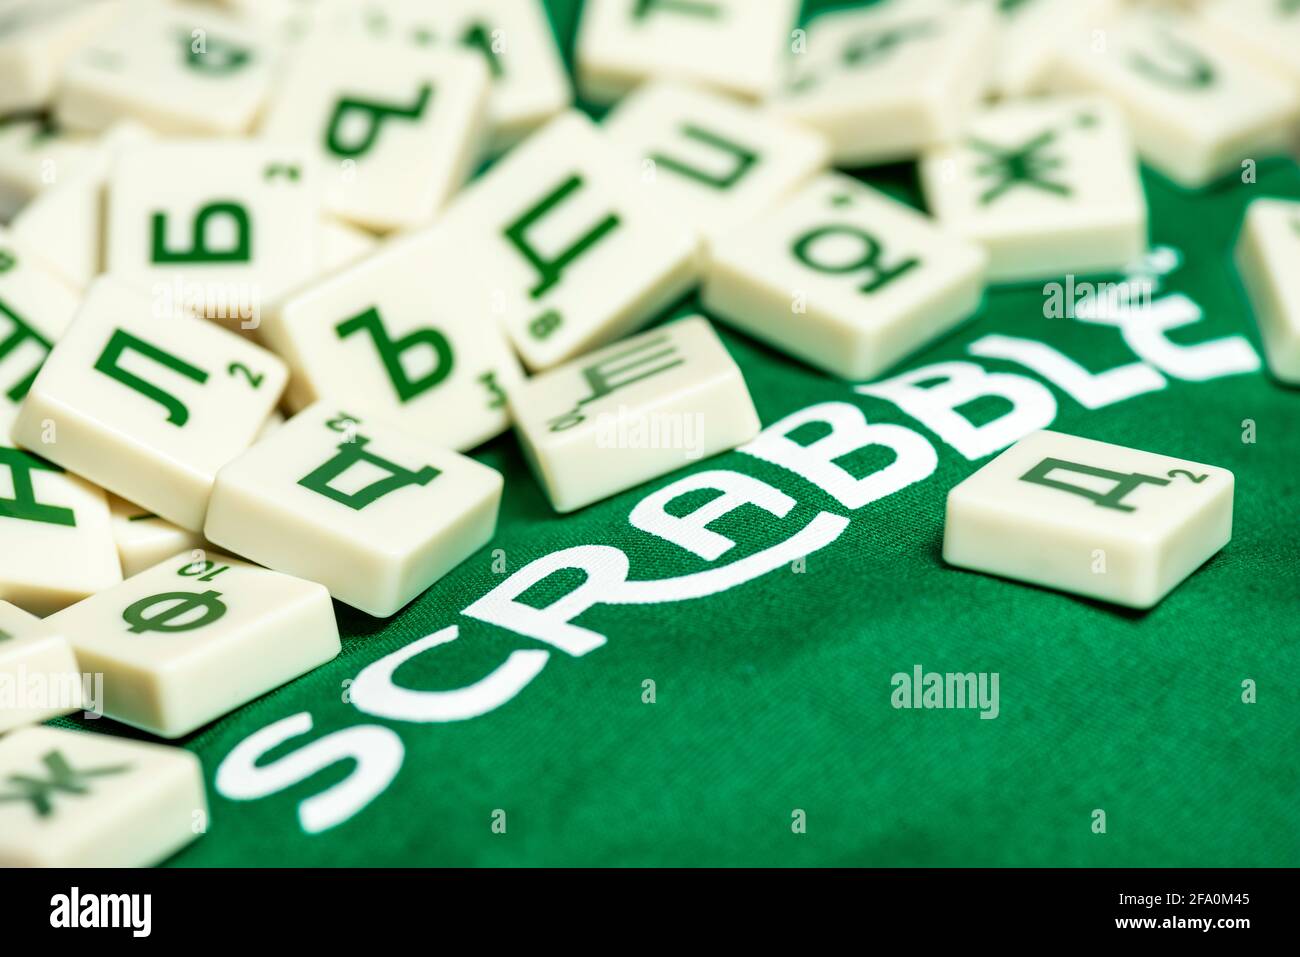 Caractères cyrilliques bulgares Scrabble jeu de société tuiles Banque D'Images